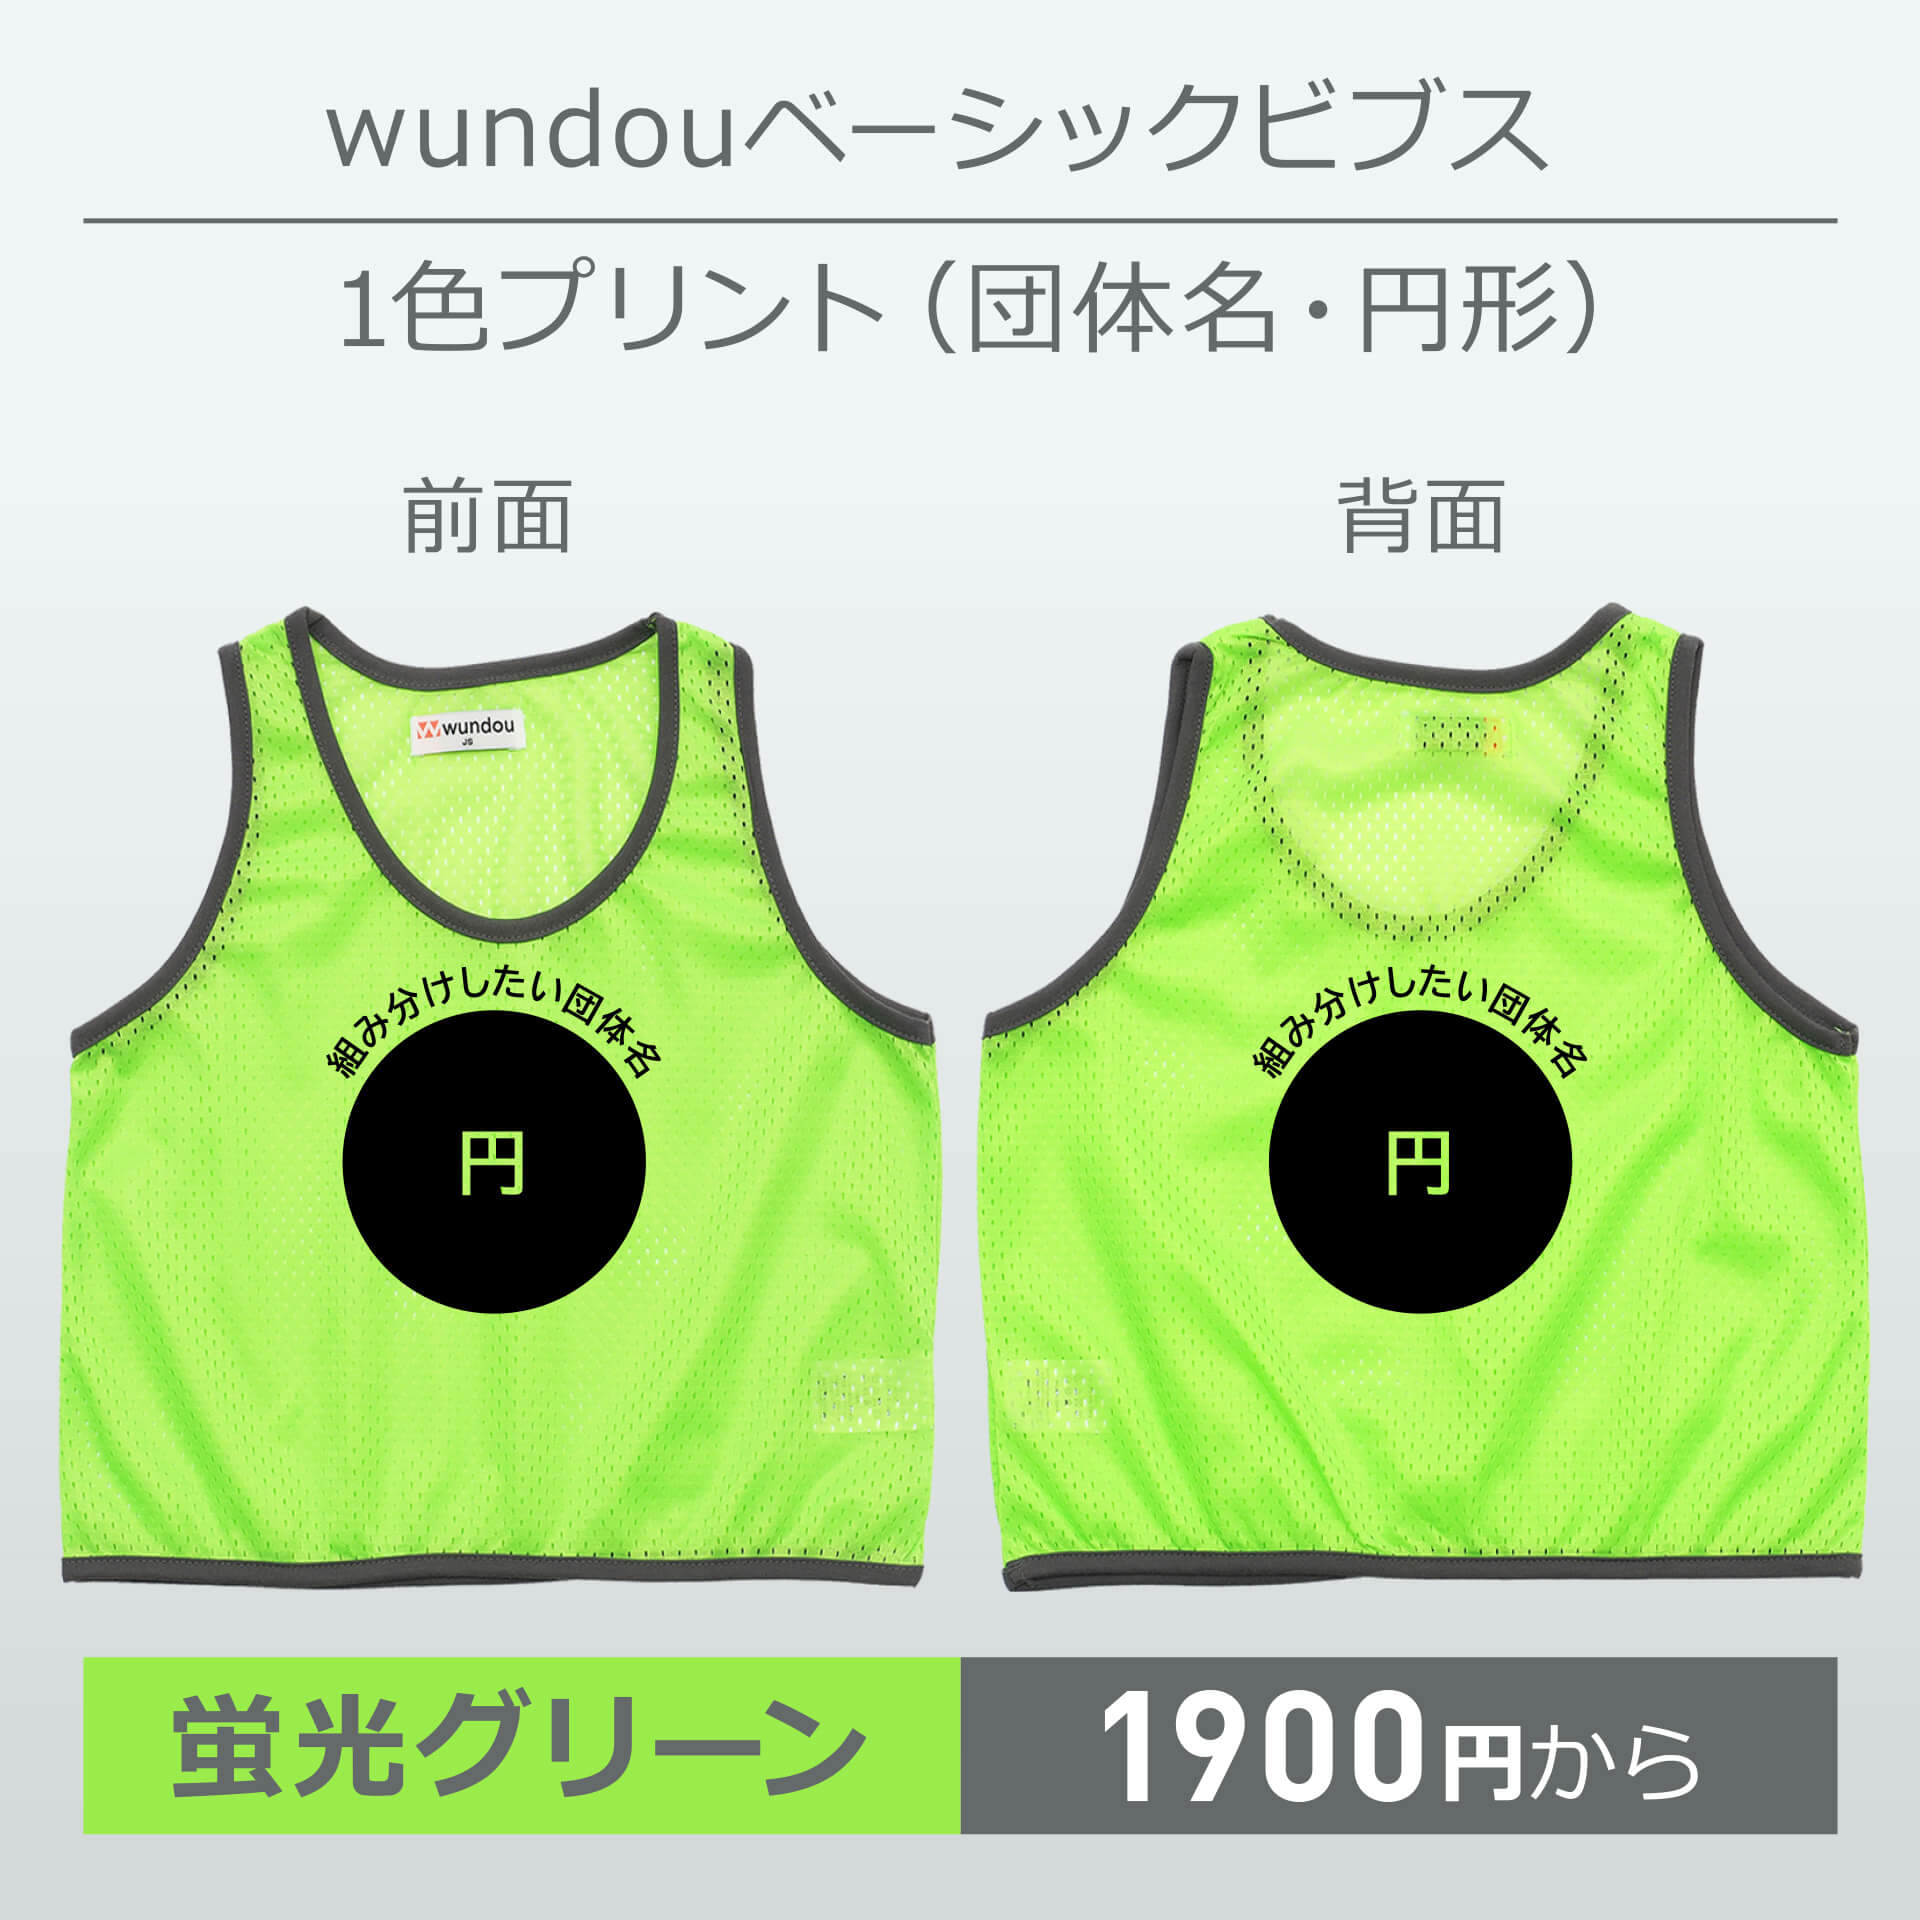 wundou・ベーシックビブス・1色プリント(団体名・円形)・蛍光グリーン